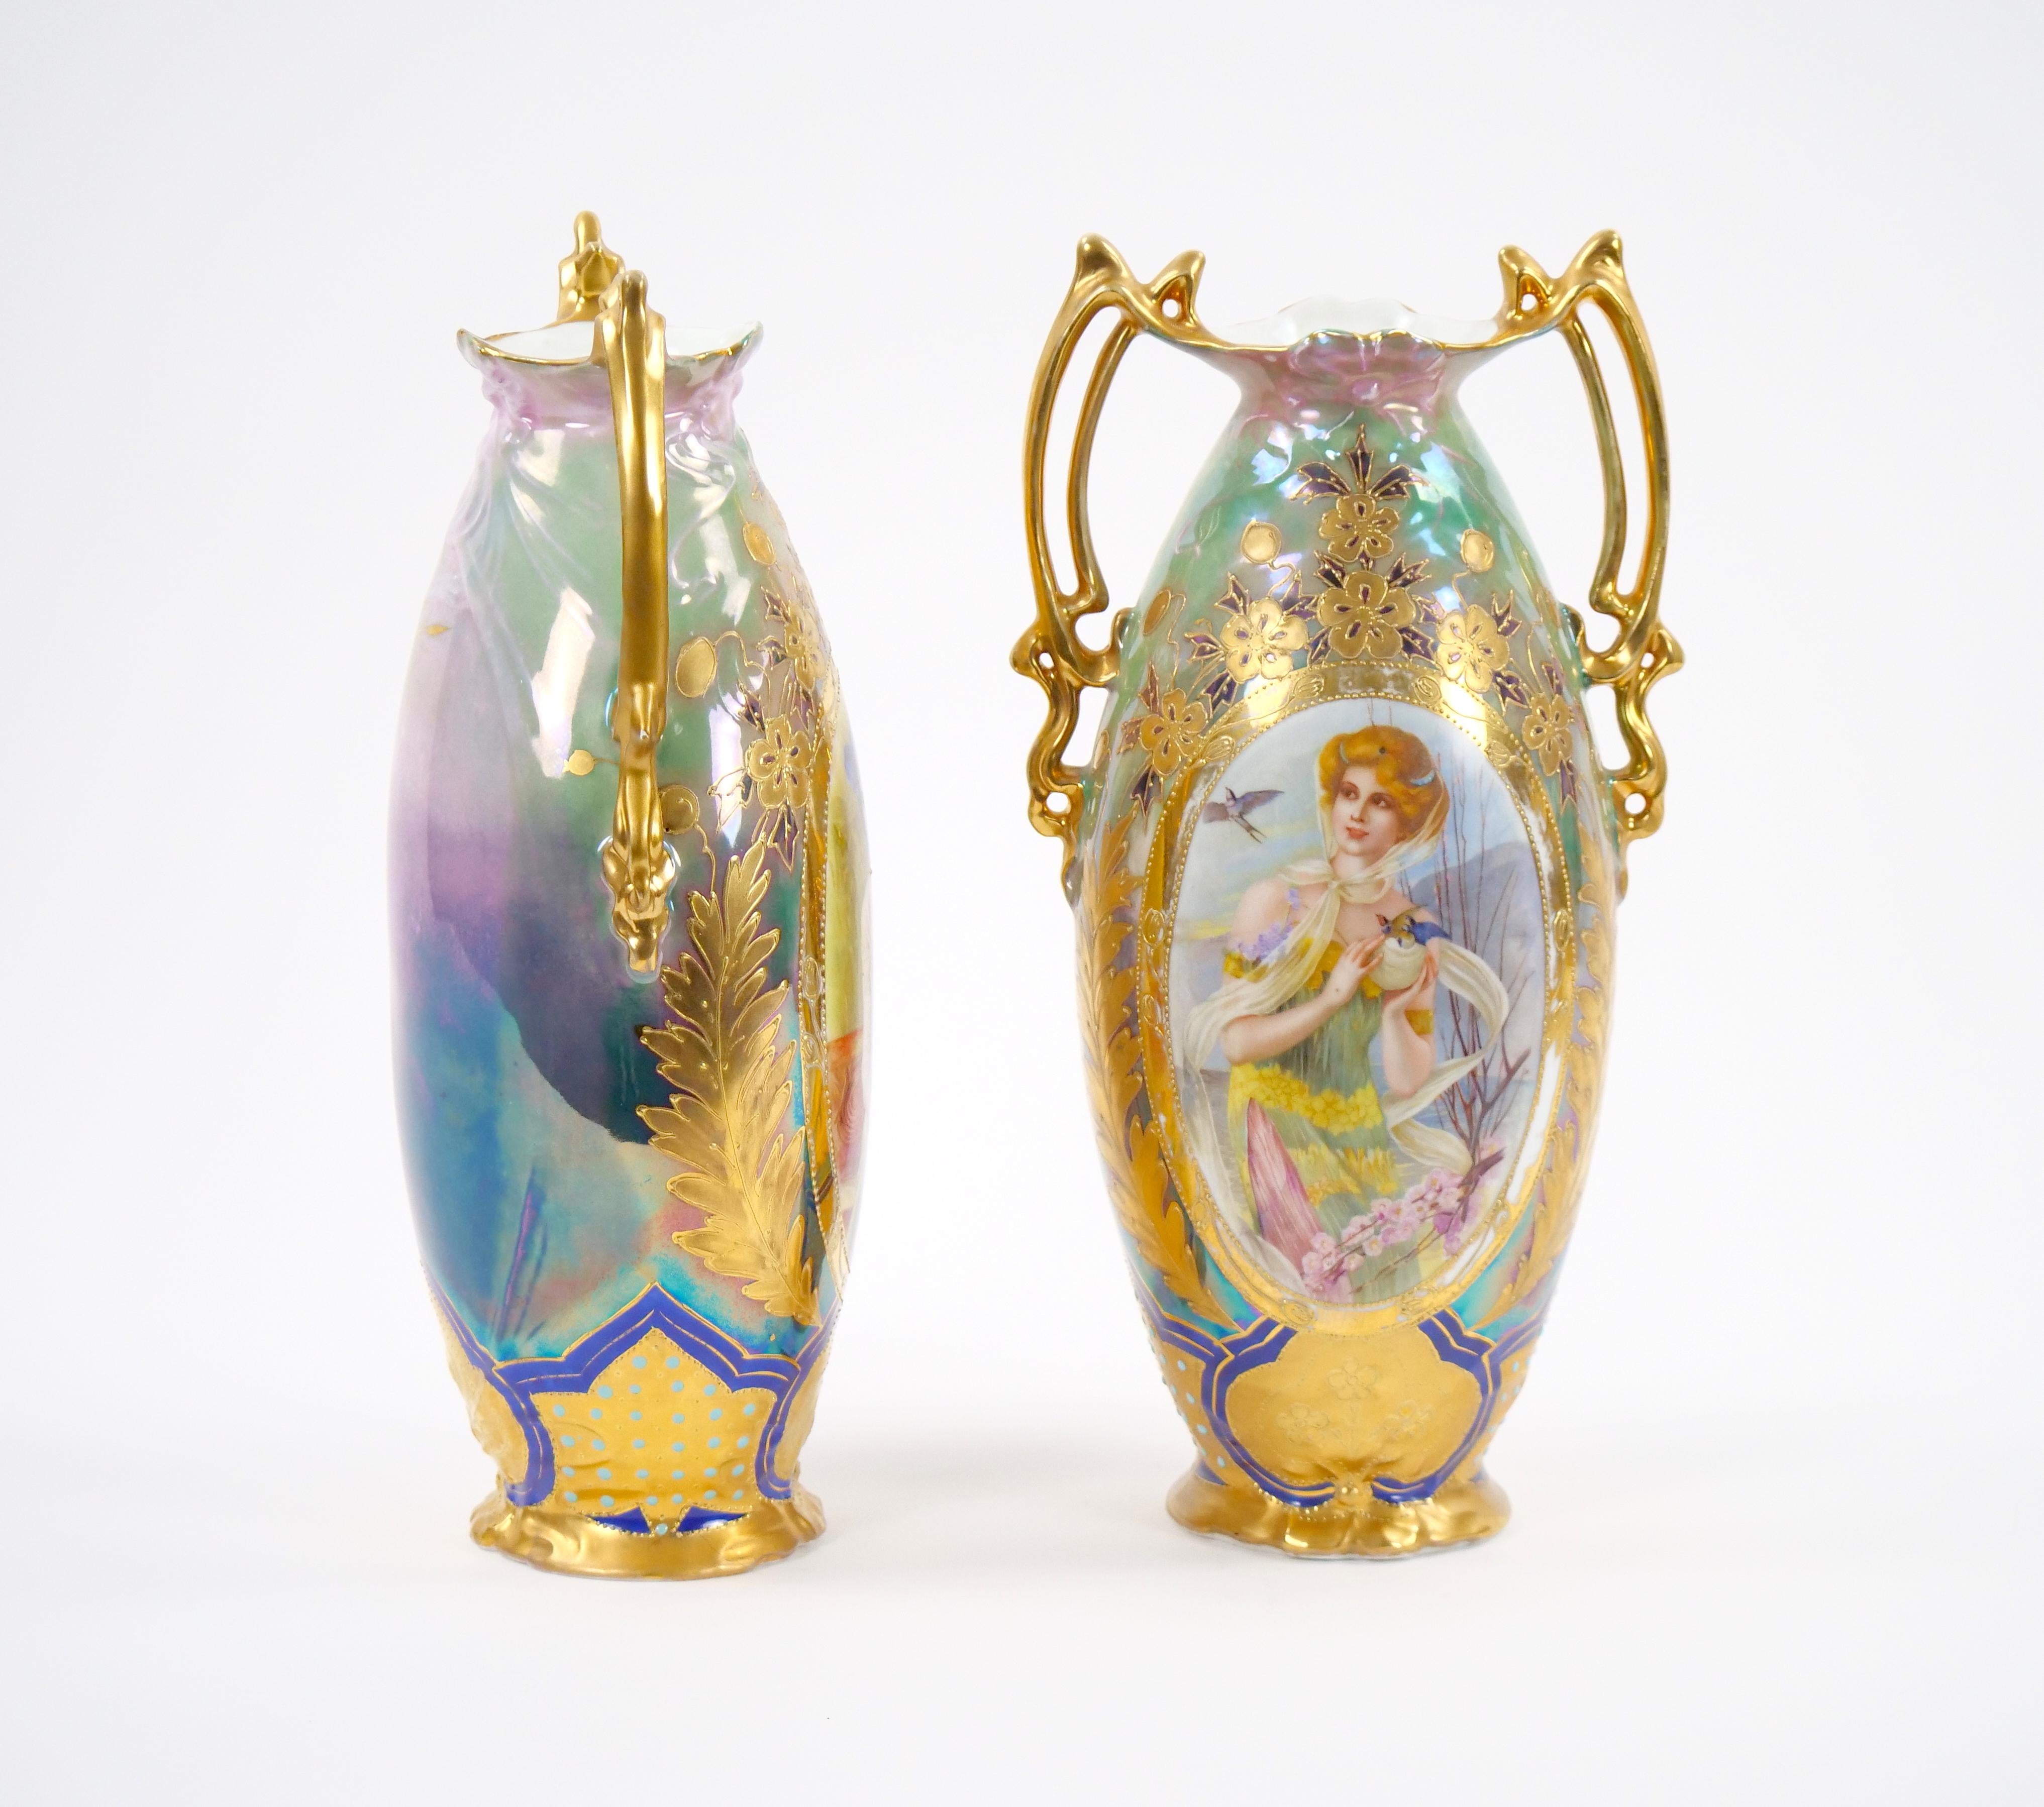 
Entdecken Sie den Charme einer vergangenen Epoche mit diesem außergewöhnlichen Paar deutscher Jugendstil-Porzellanvasen aus dem frühen 20. Jede Vase ist von der Eleganz des Jugendstils durchdrungen und ein Meisterwerk handgemalter Handwerkskunst